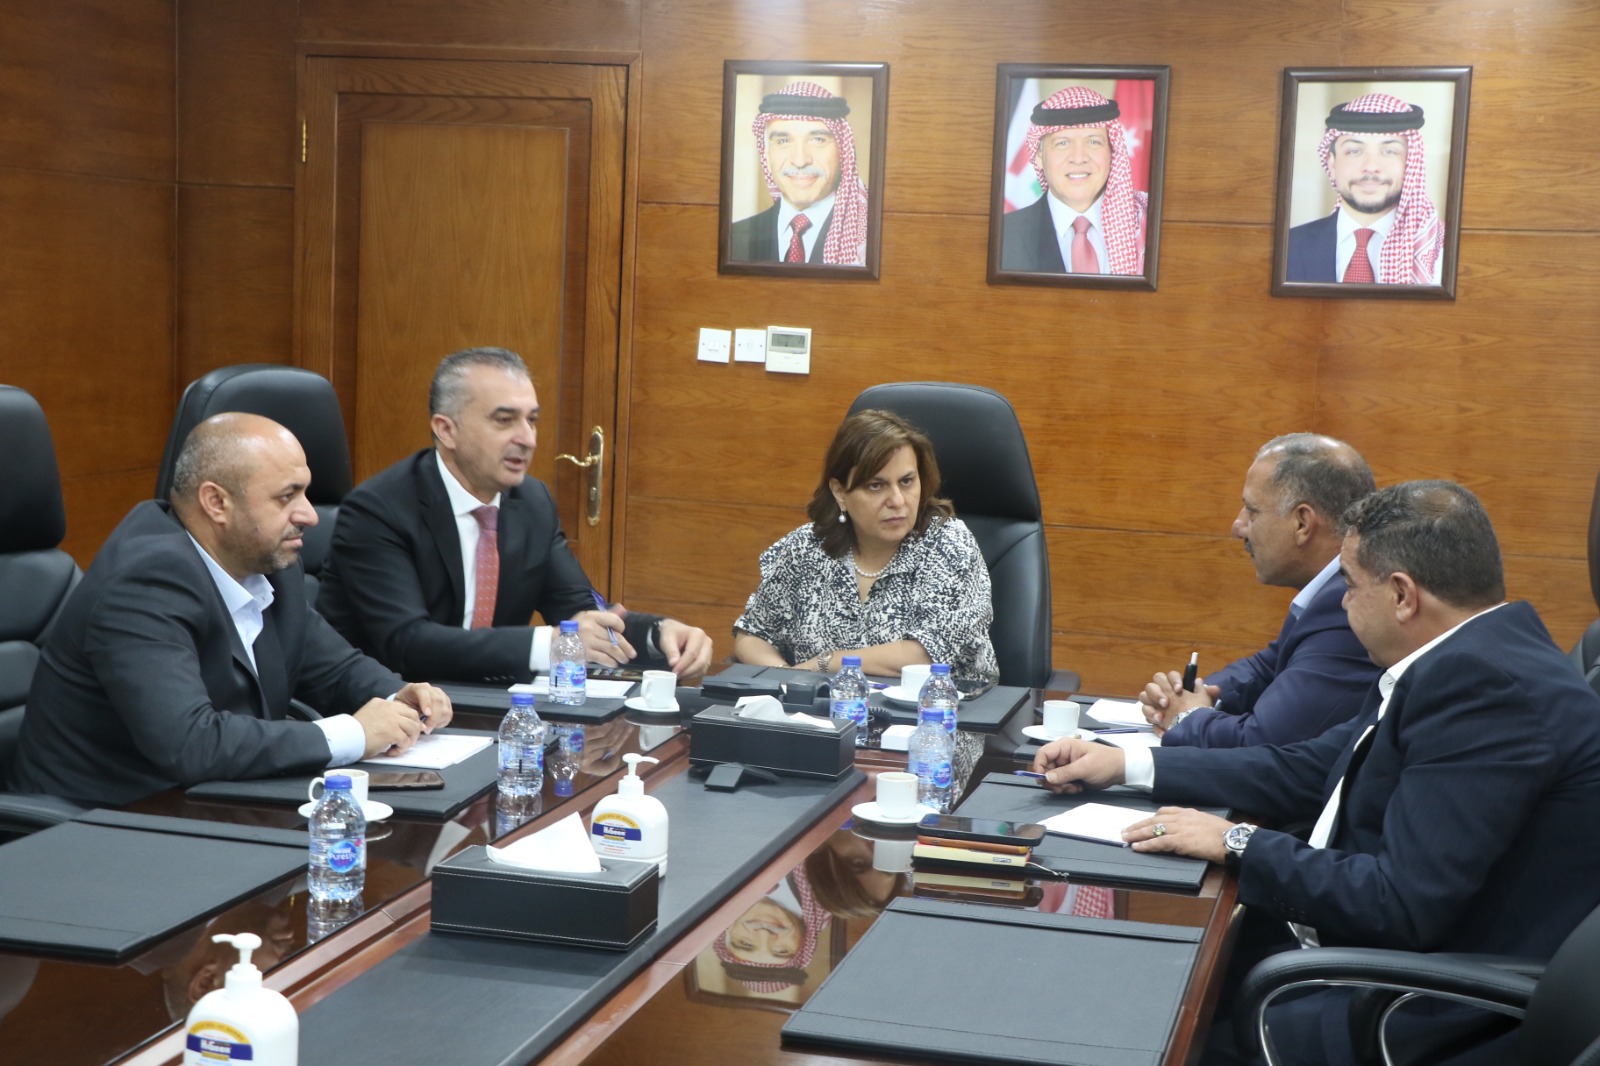 النائب هيثم زيادين يبحث مع وزيرة الاستثمار فرص الاستثمار ودعم مشاريع في الكرك